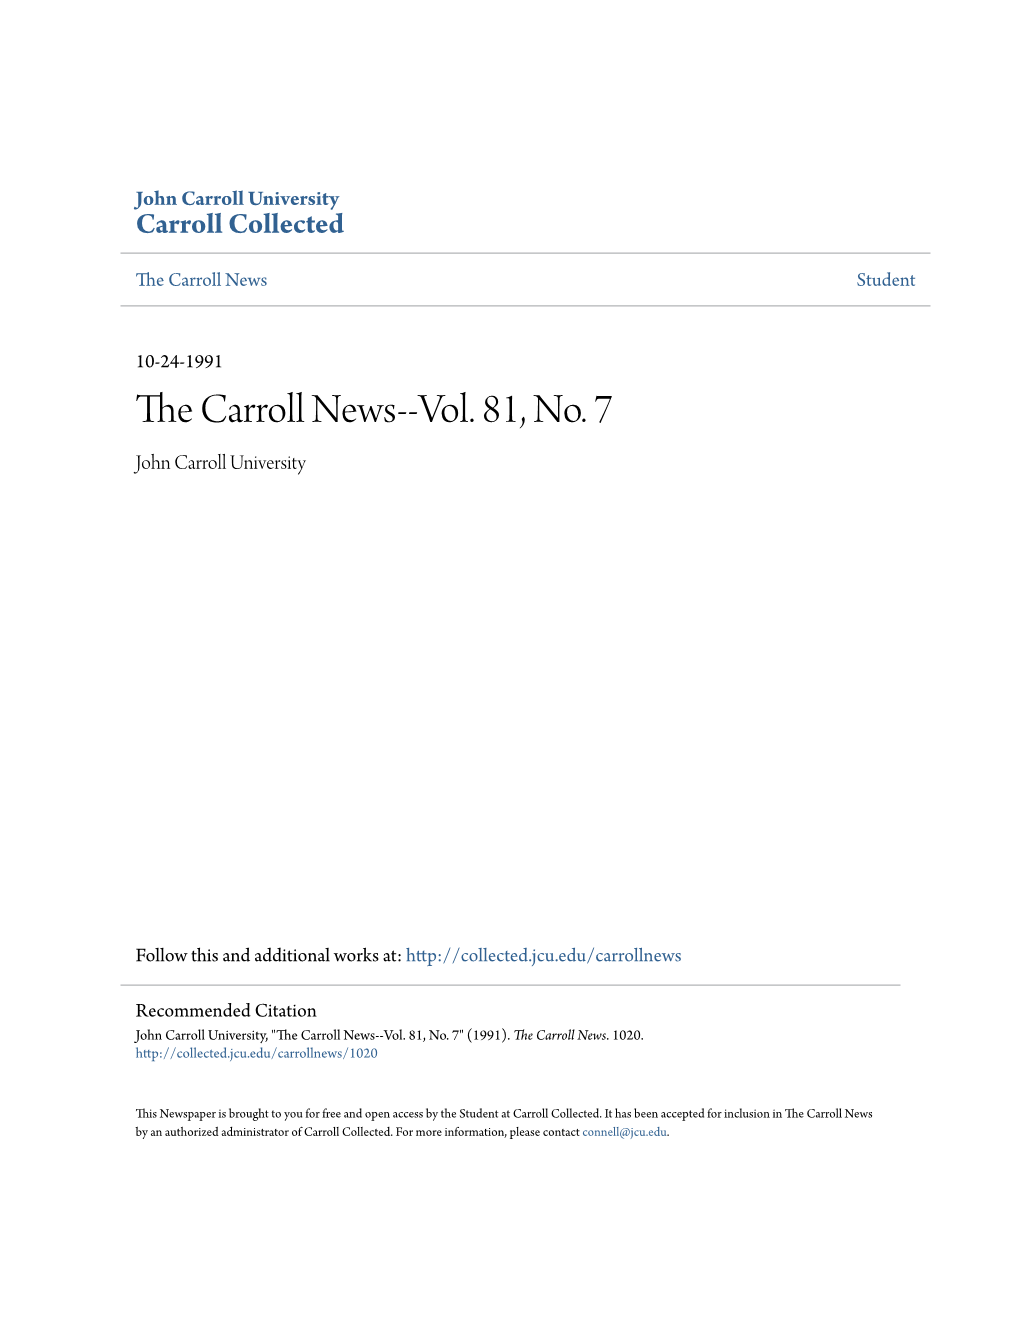 The Carroll News--Vol. 81, No. 7